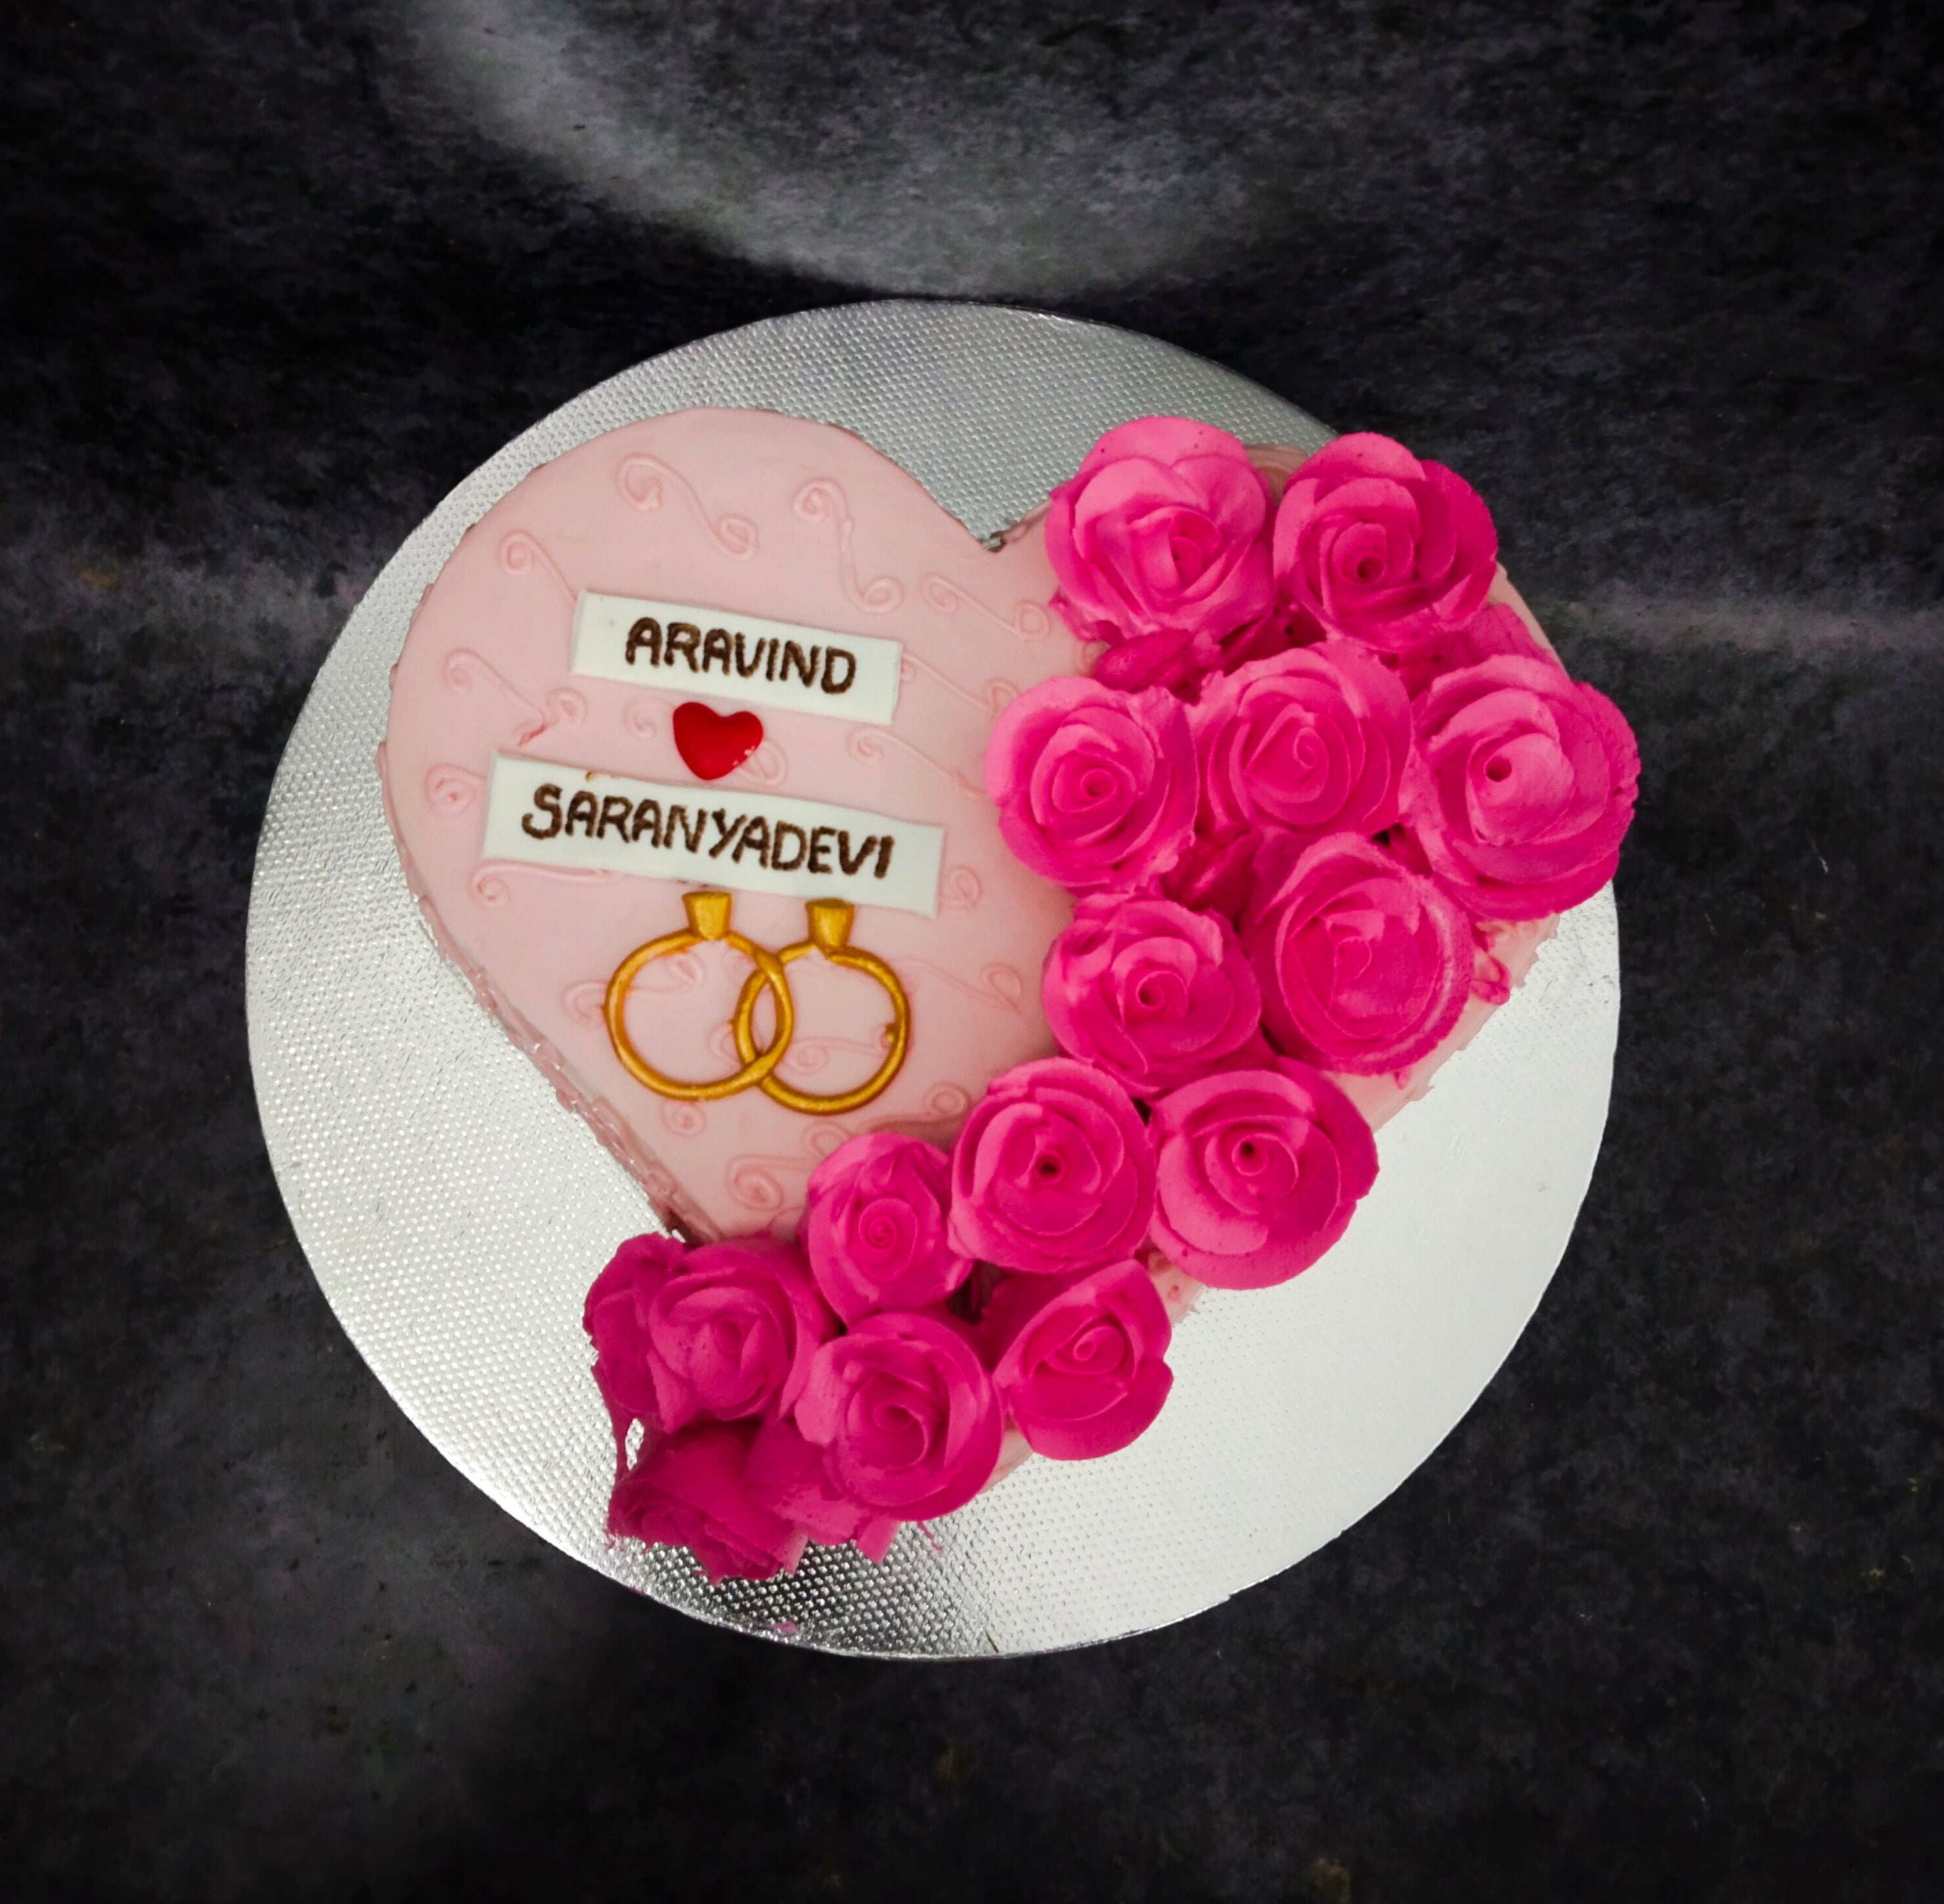 Mr & Mrs Wedding Rings Cake Topper – The Ruffled Apron Bakery, LLC